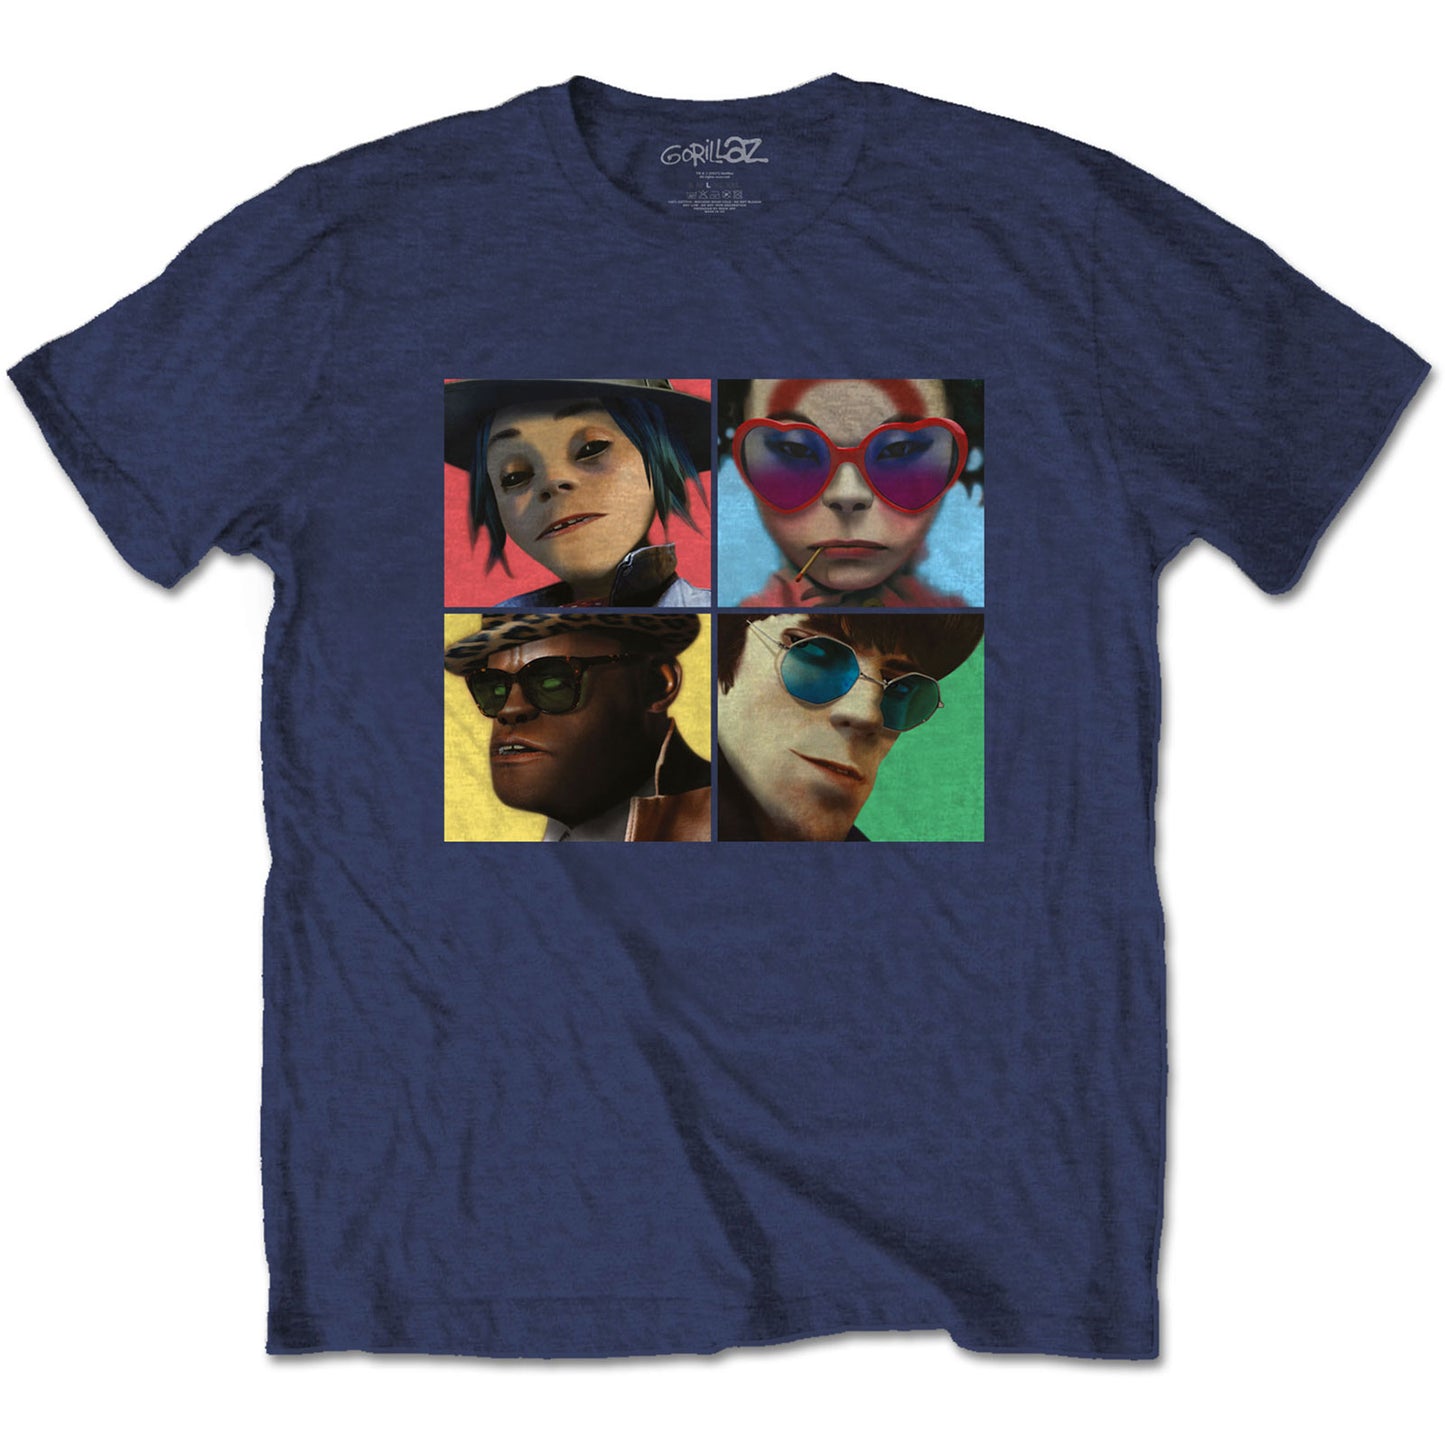 Gorillaz T-Shirt: Humanz